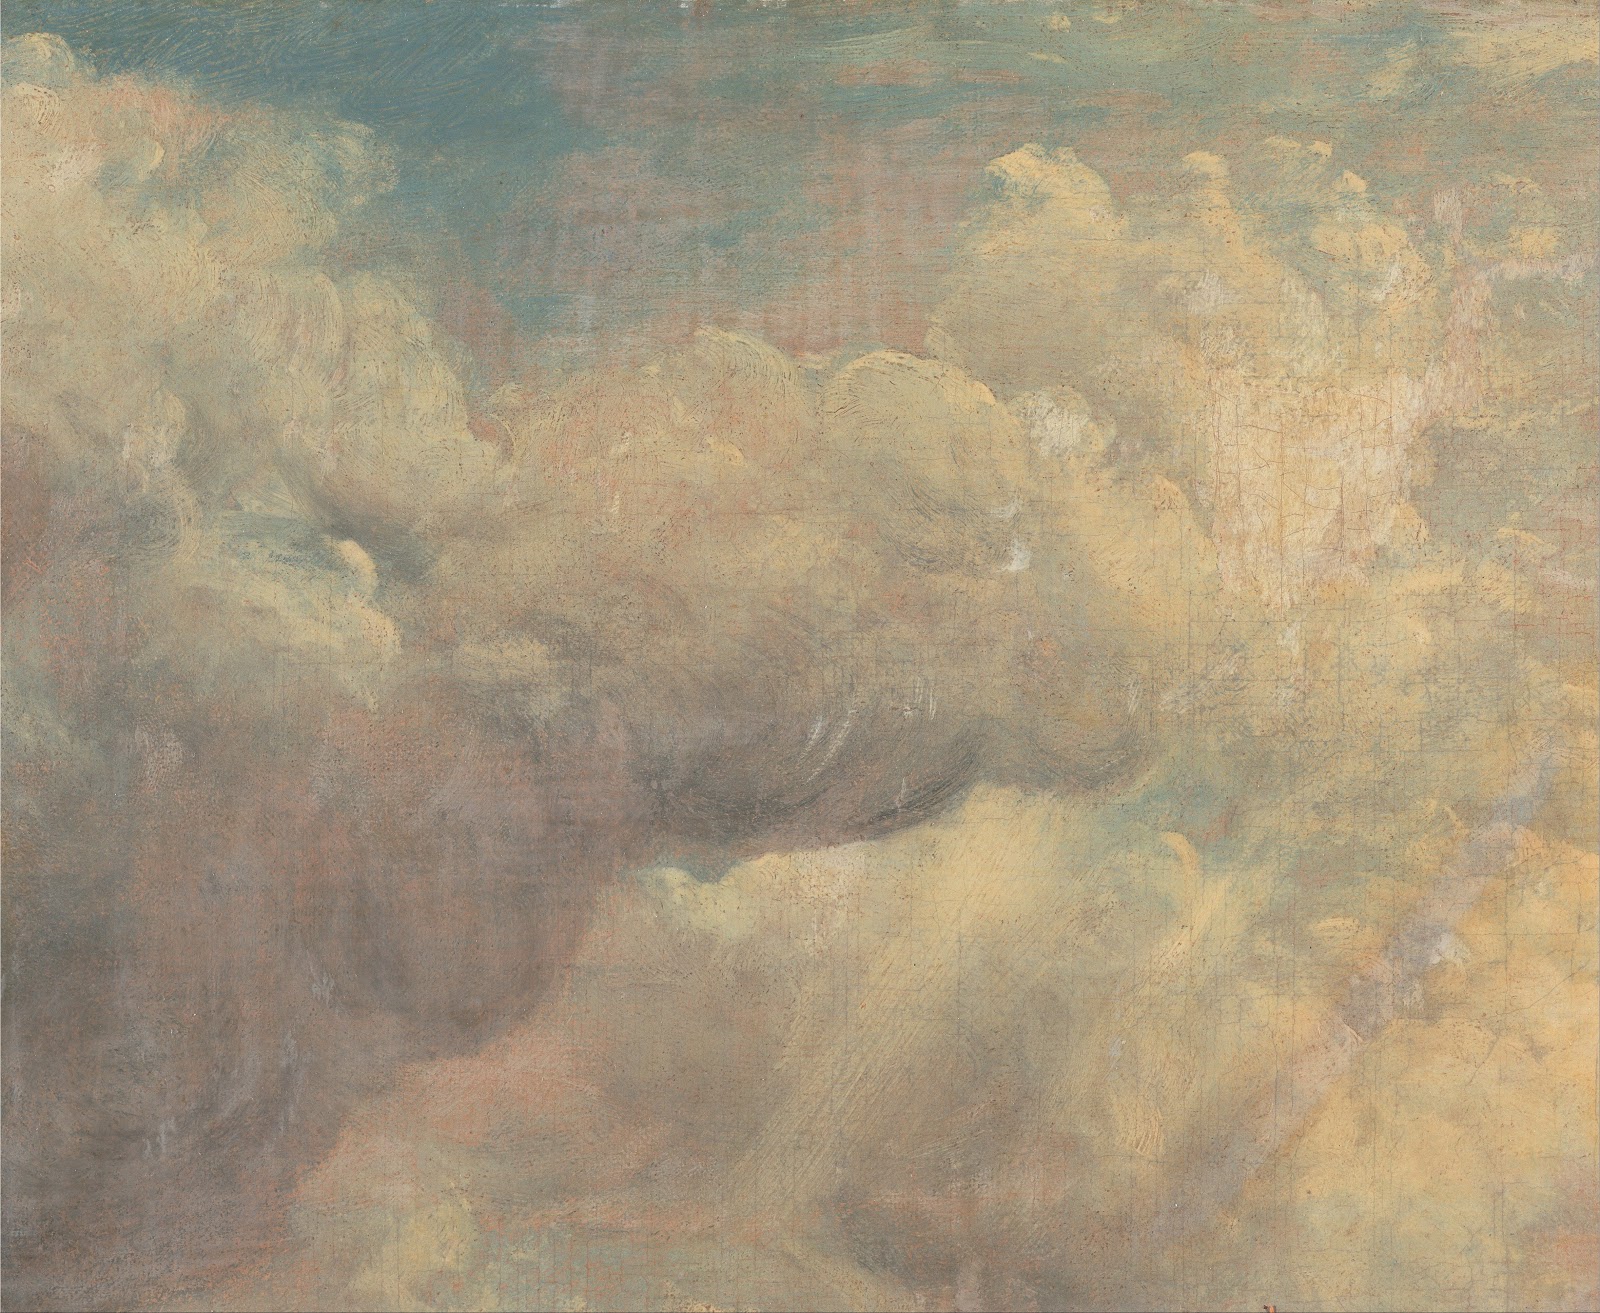 John+Constable-1776-1837 (45).jpg